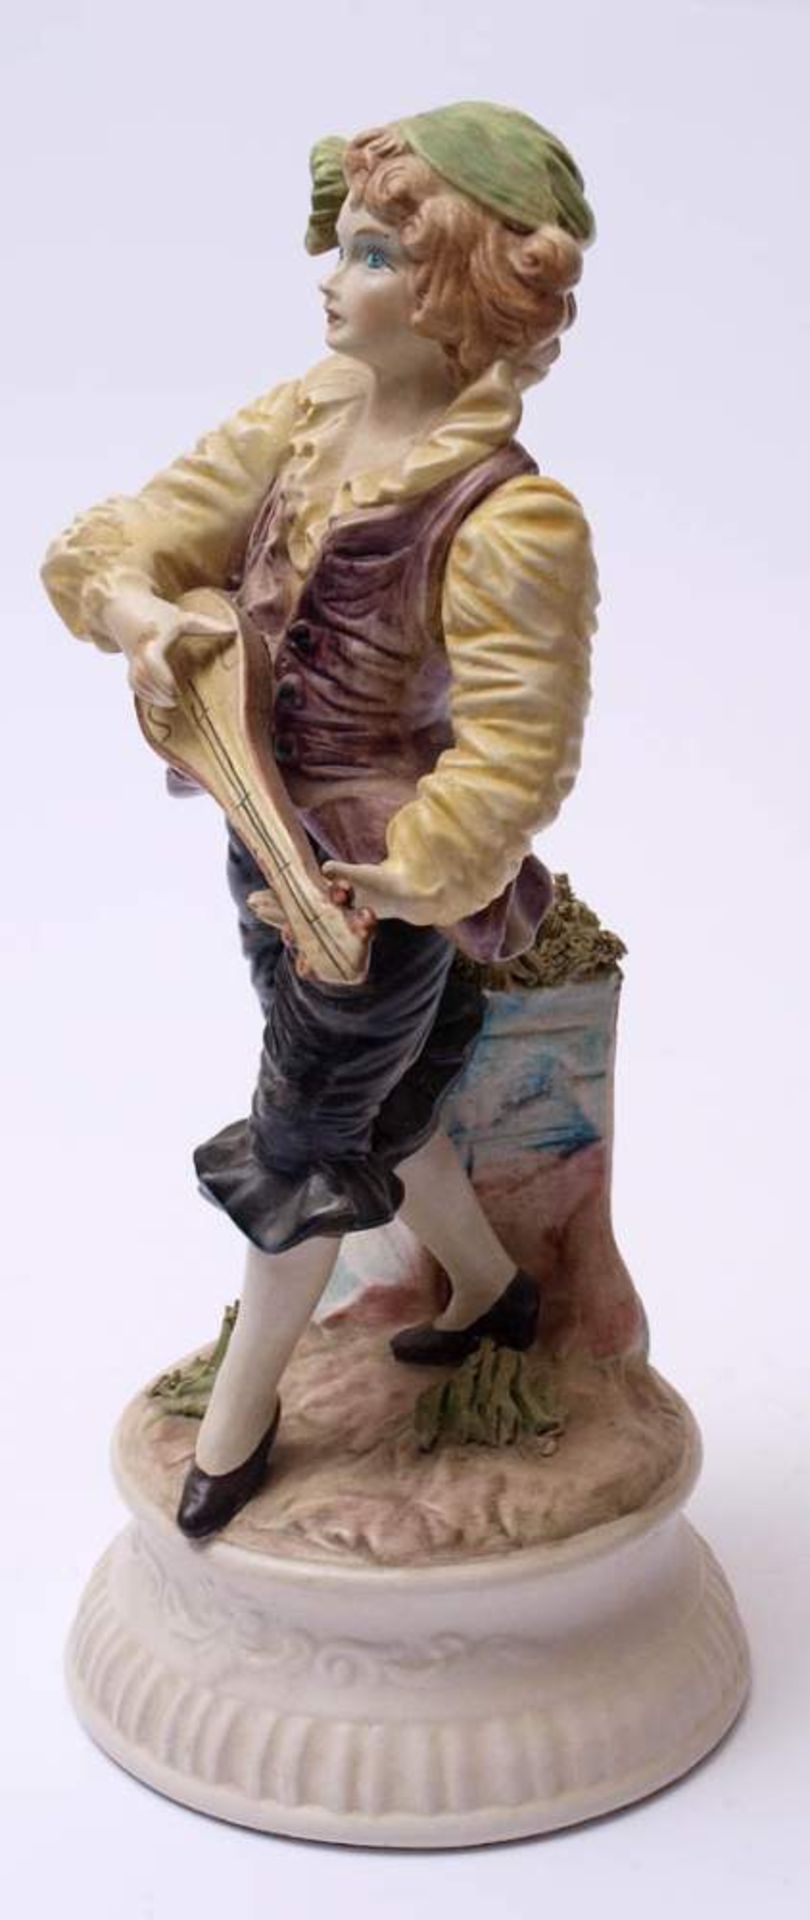 FigurineAuf reliefiertem Sockel Mandoline spielender junger Mann. Polyhcrom bemalt. H.40cm. - Bild 3 aus 4